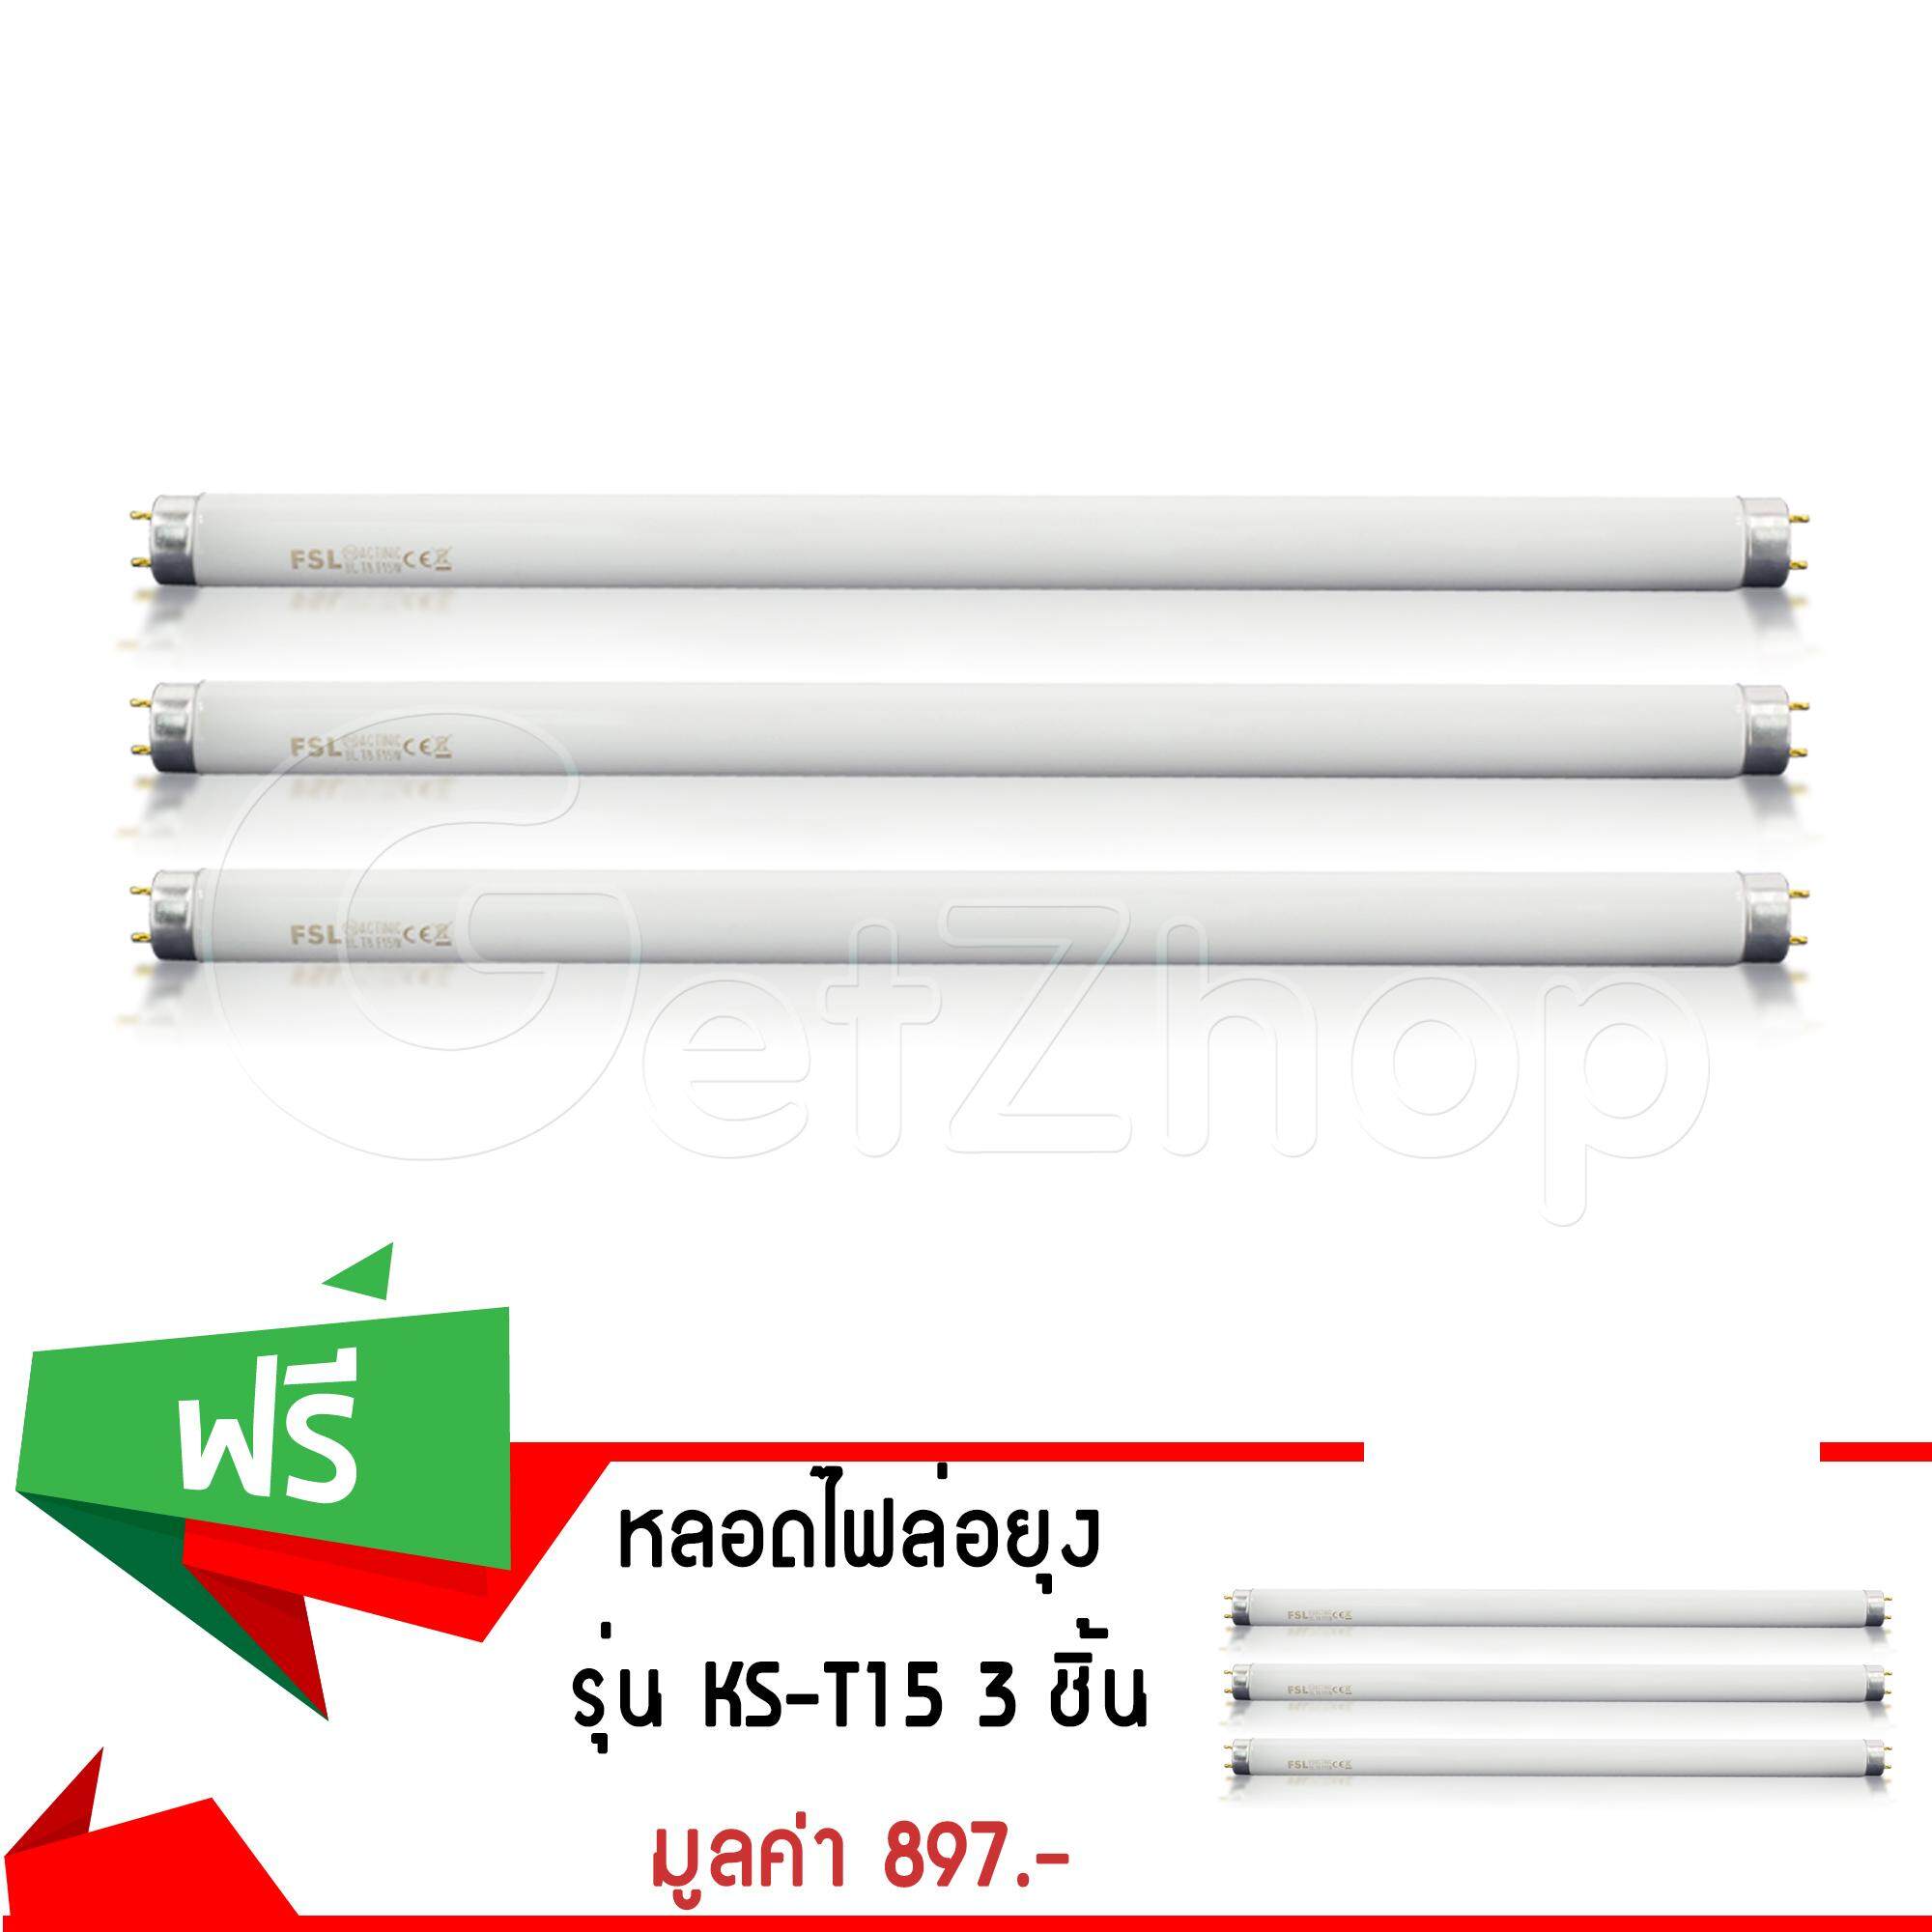 Getzhop หลอดไฟล่อยุง หลอดไฟ ฟลูออเรสเซนซ์ รุ่น KS-T15 (สีขาว) (ซื้อ 3 แถม 3)